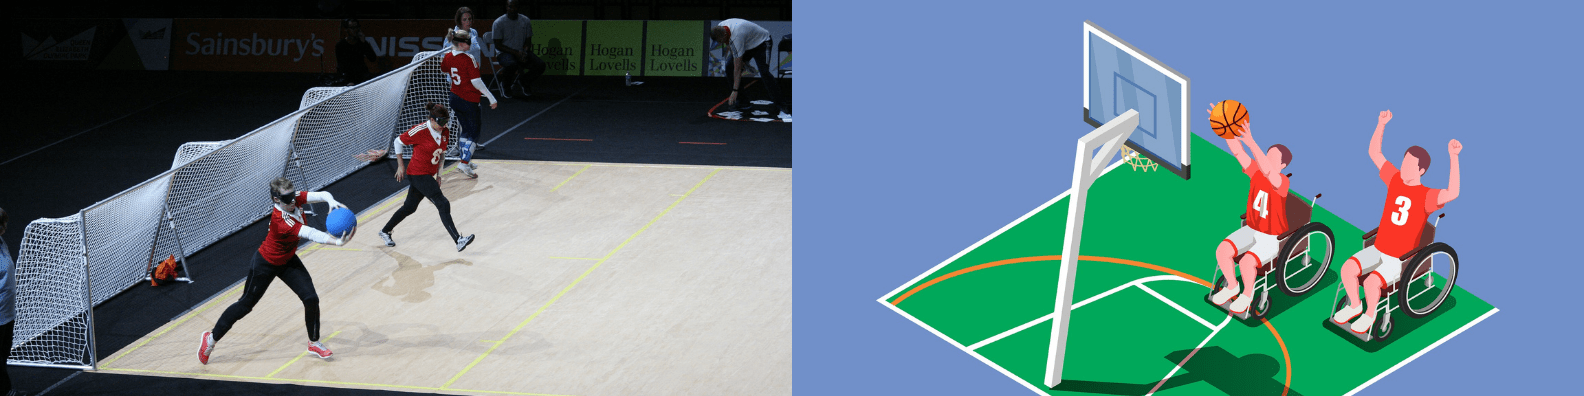 Droite de l'image : trois personnes qui joue au Cécifoot sur un terrain de foot en salle. Gauche de l'image : deux personnes en fauteuil roulant jouent au basket ball